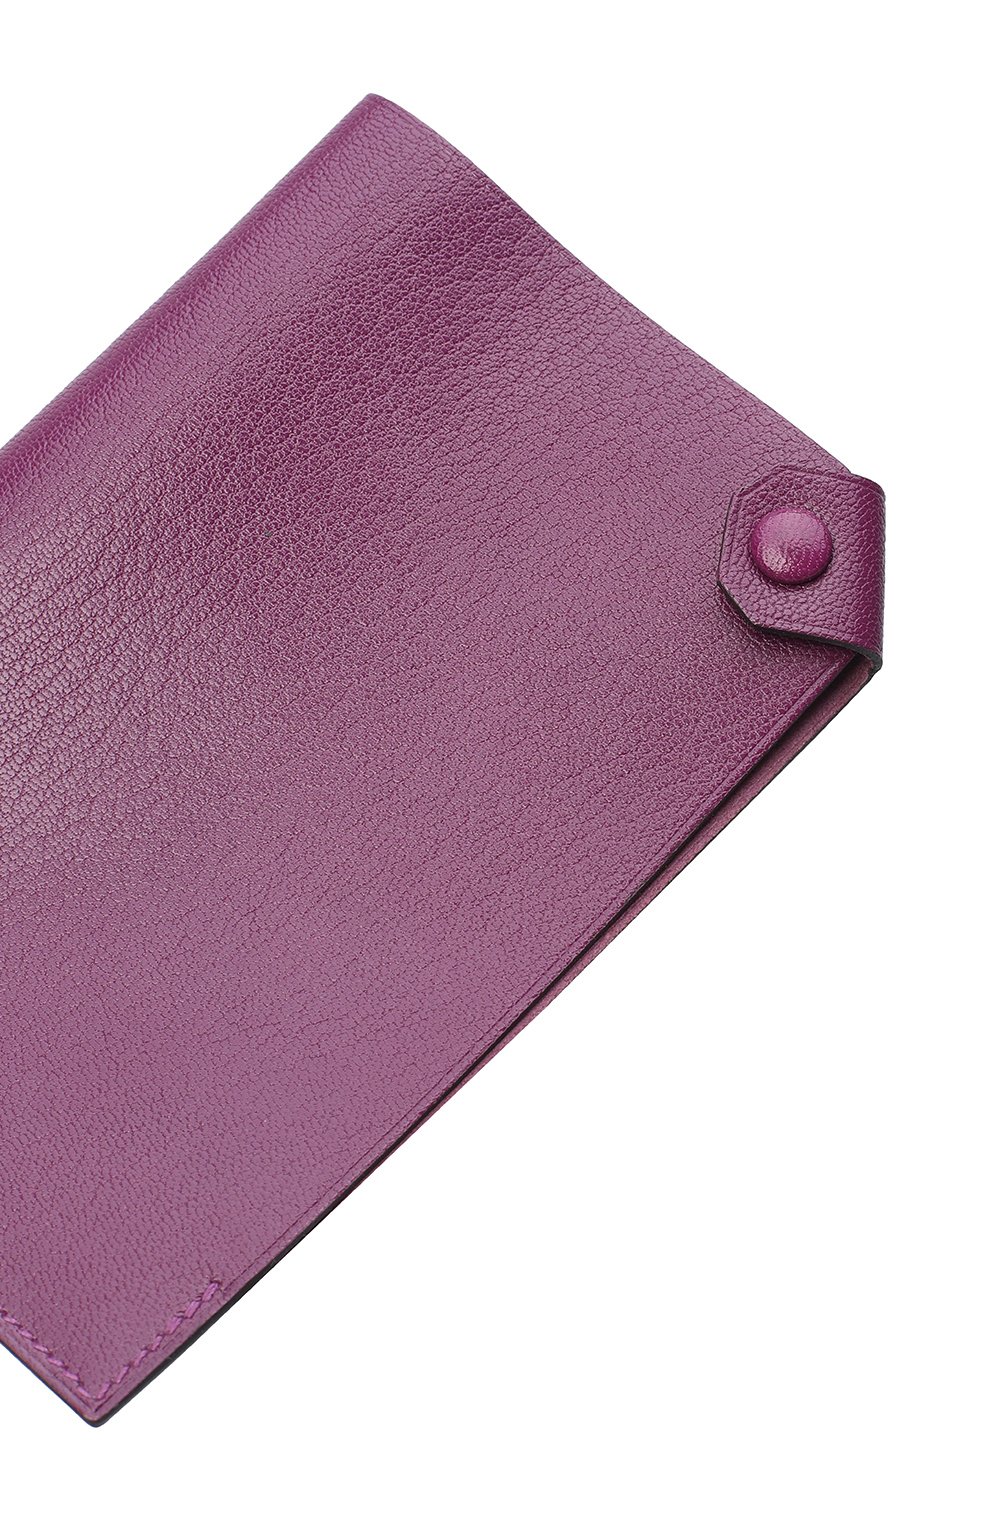 Обложка для паспорта | Hermes | Фиолетовый - 3